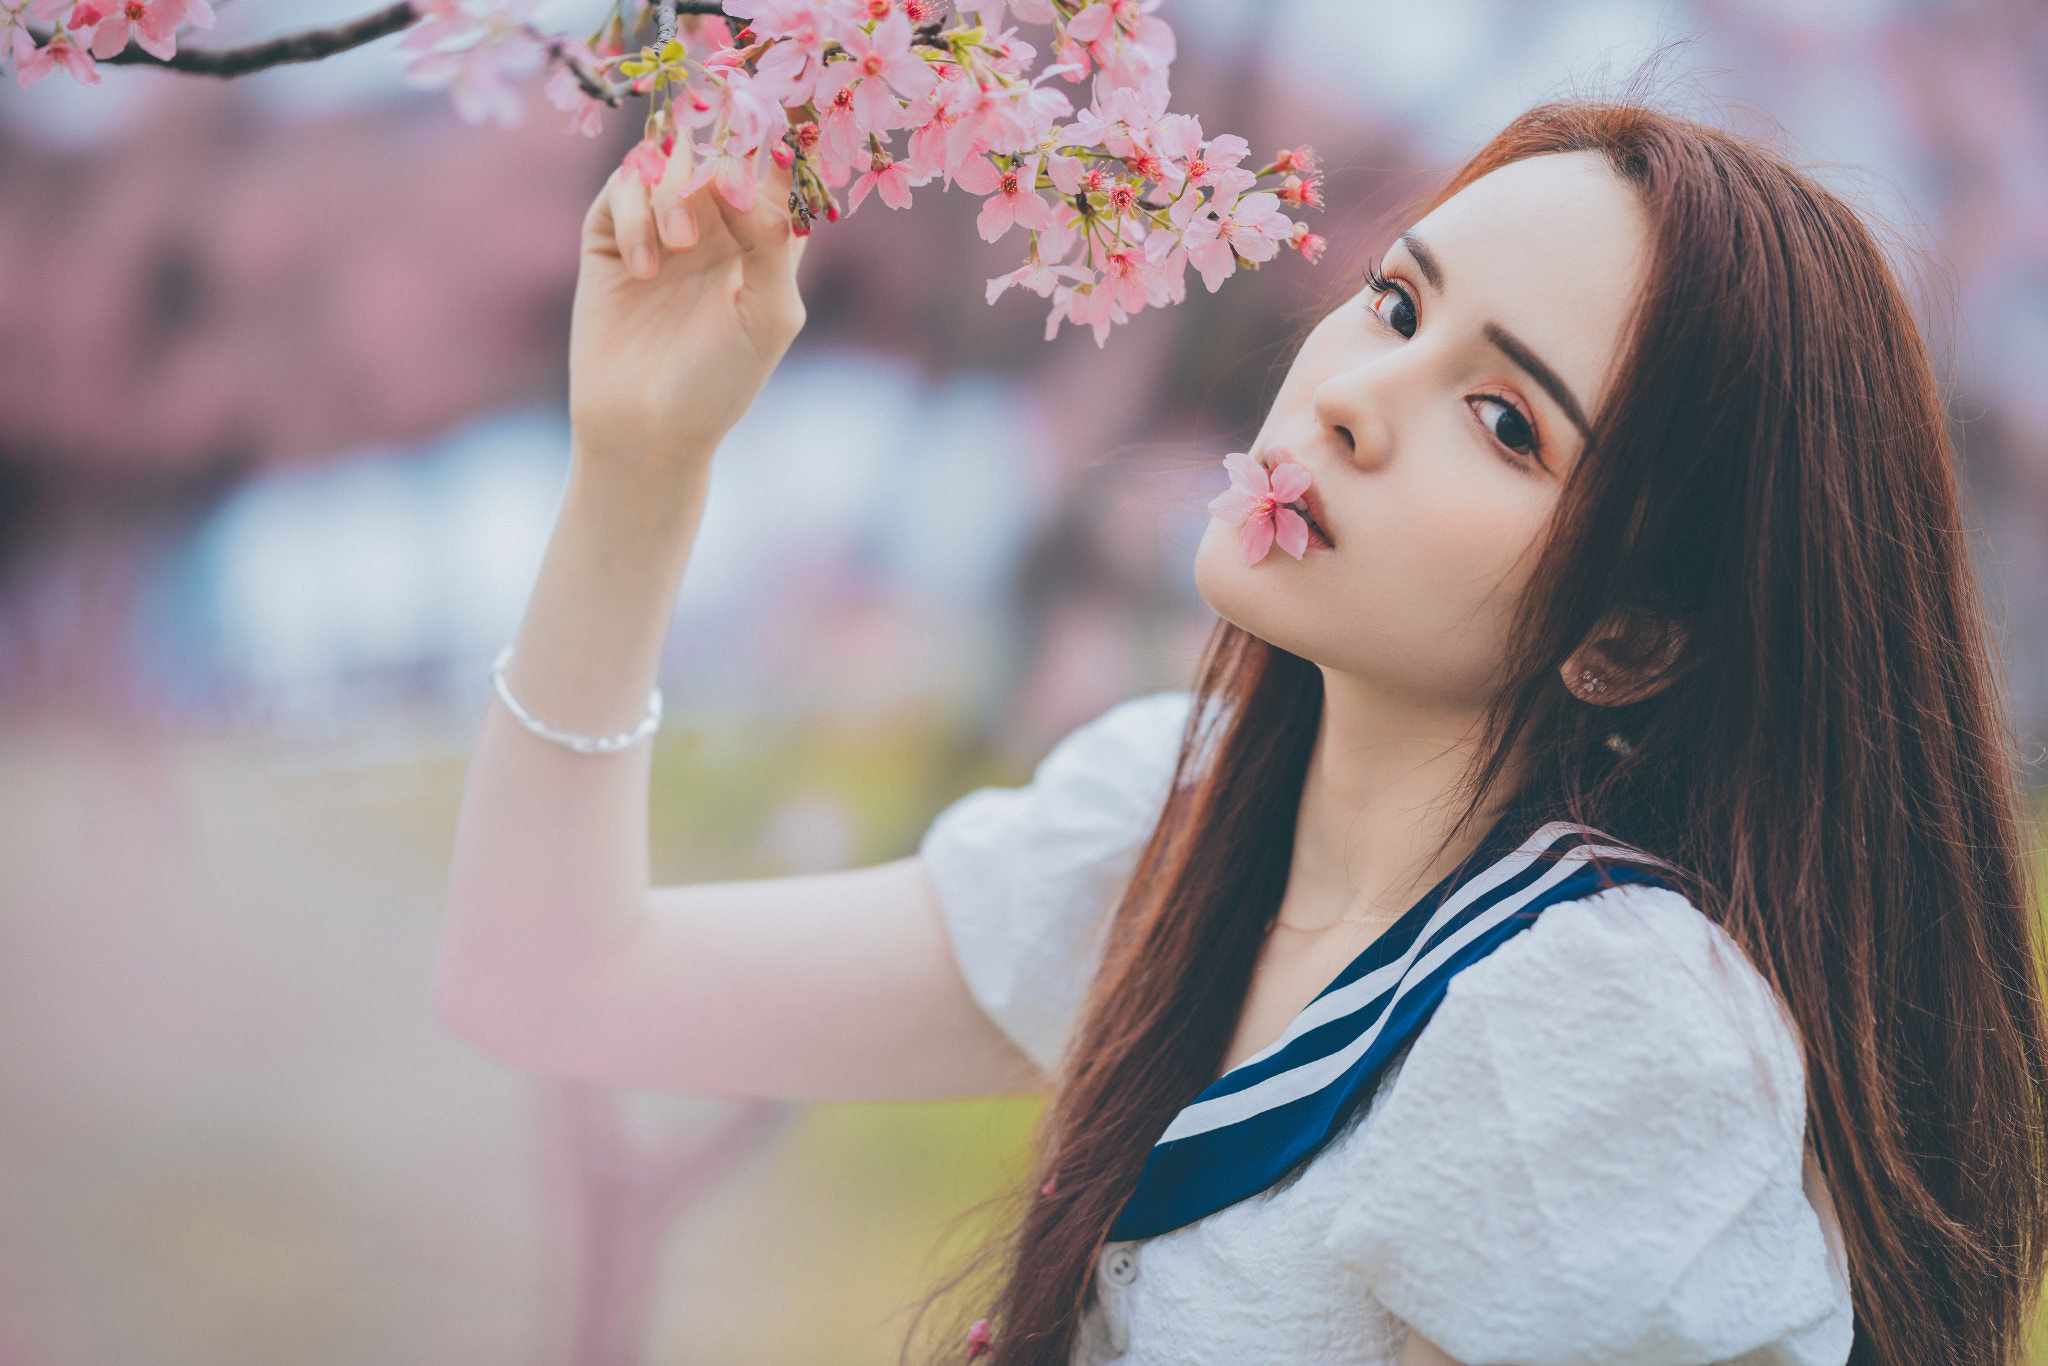 Qin Xiaoqiang Women Asian Redhead Long Hair Flower In Mouth Flowers Casual Pink Portrait 2048x1366